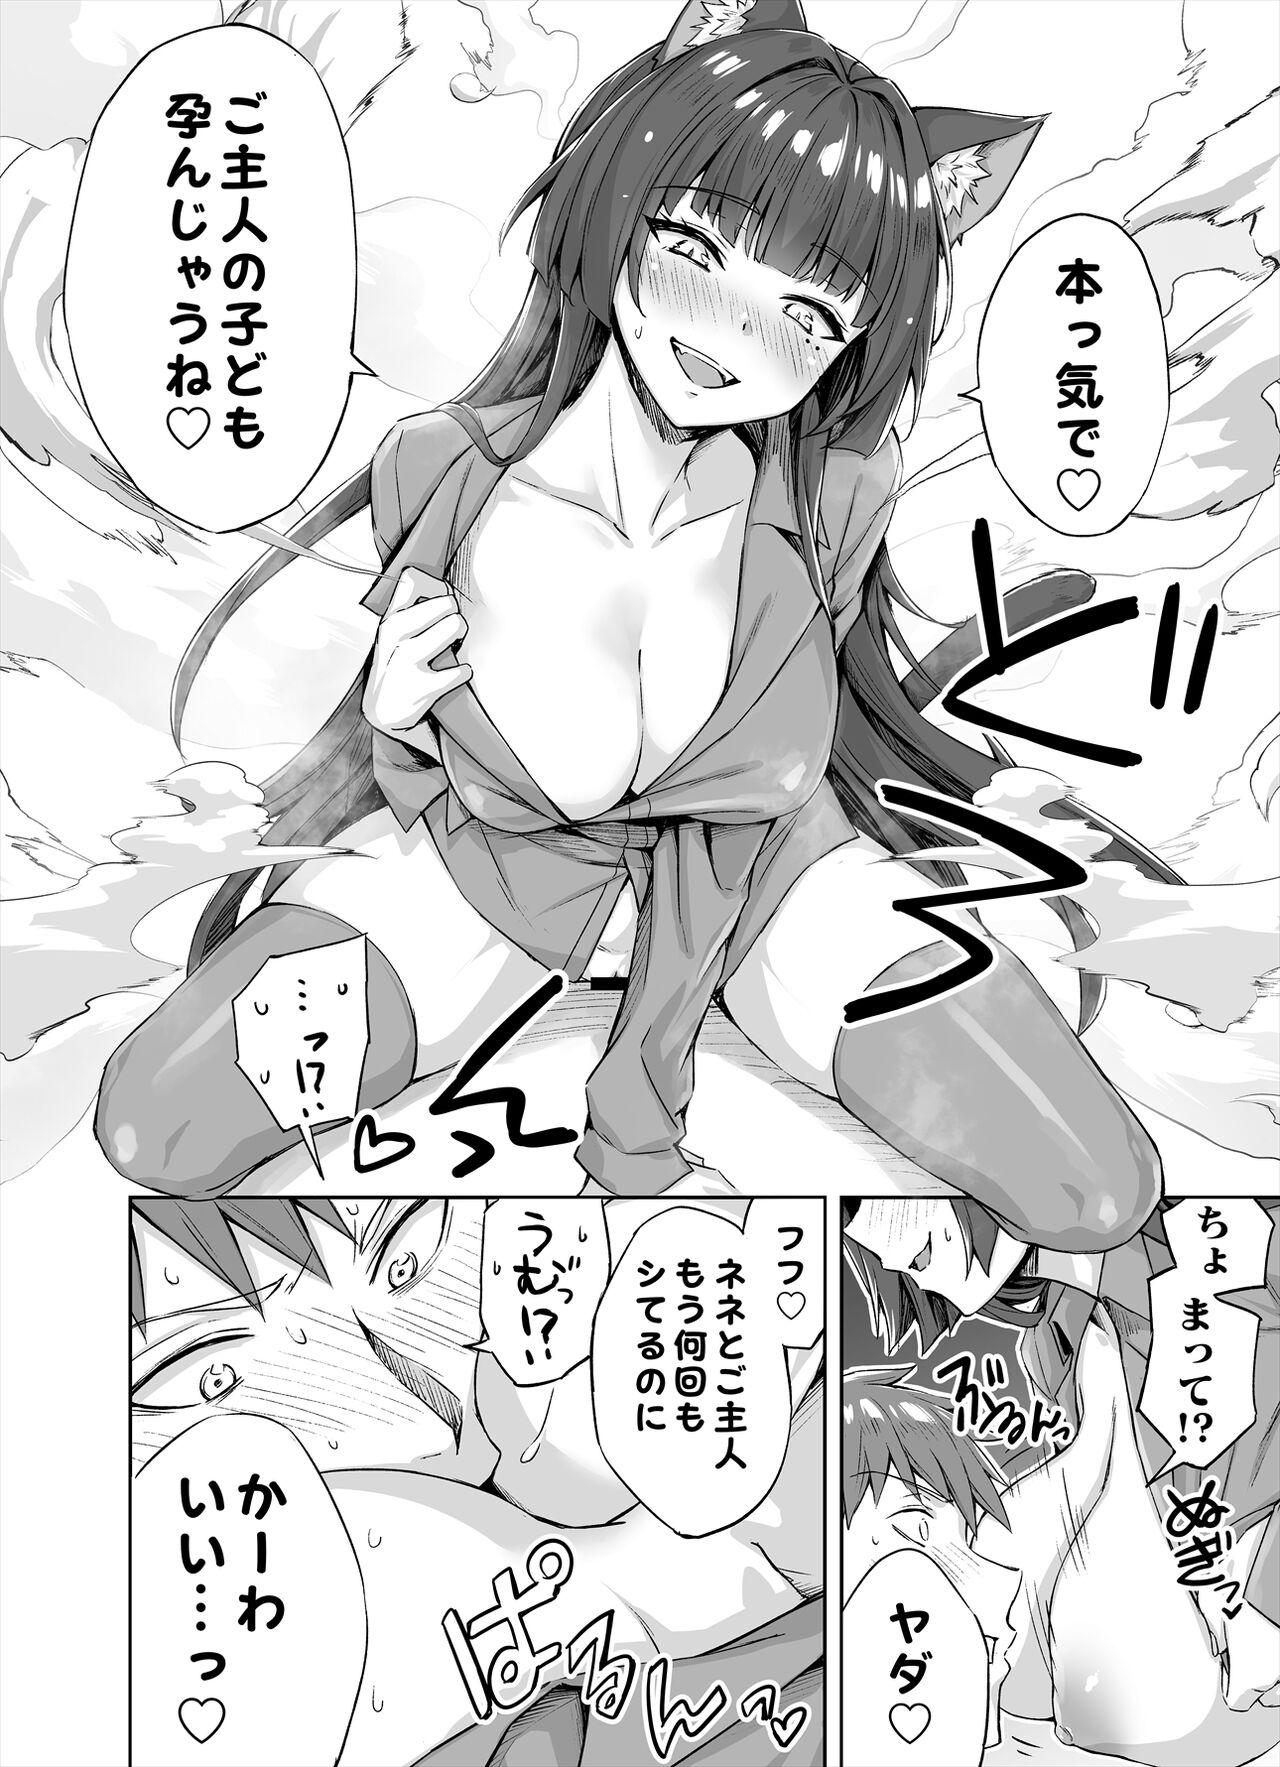 Putinha [Kotatsu] Yandere-kai Neko-chan Seijin Manga #01 Concha - Page 3